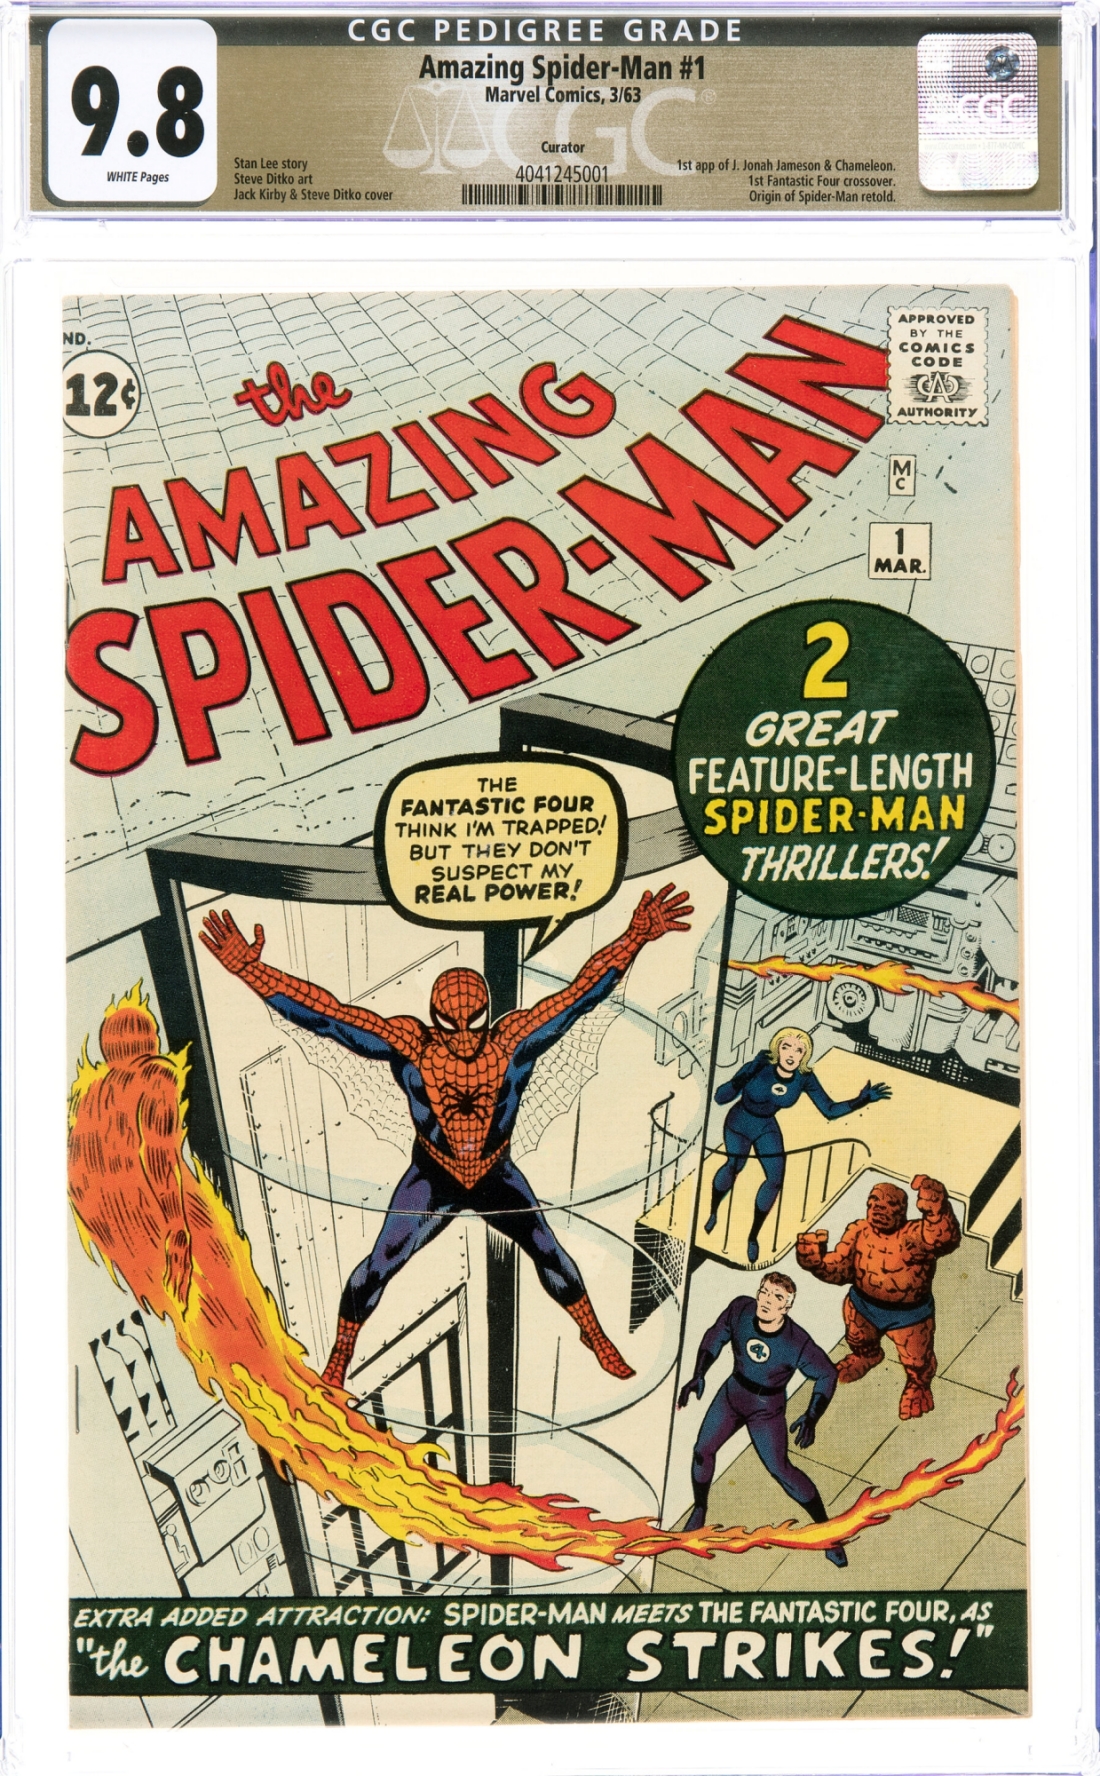 Közel félmilliárd forintért kelt el a Marvel 1963-as, az azóta eltelt évtizedek ellenére kiemelkedő CGC-besorolású Pókember-képregénye. (Fotó: Heritage Auctions/HA.com)